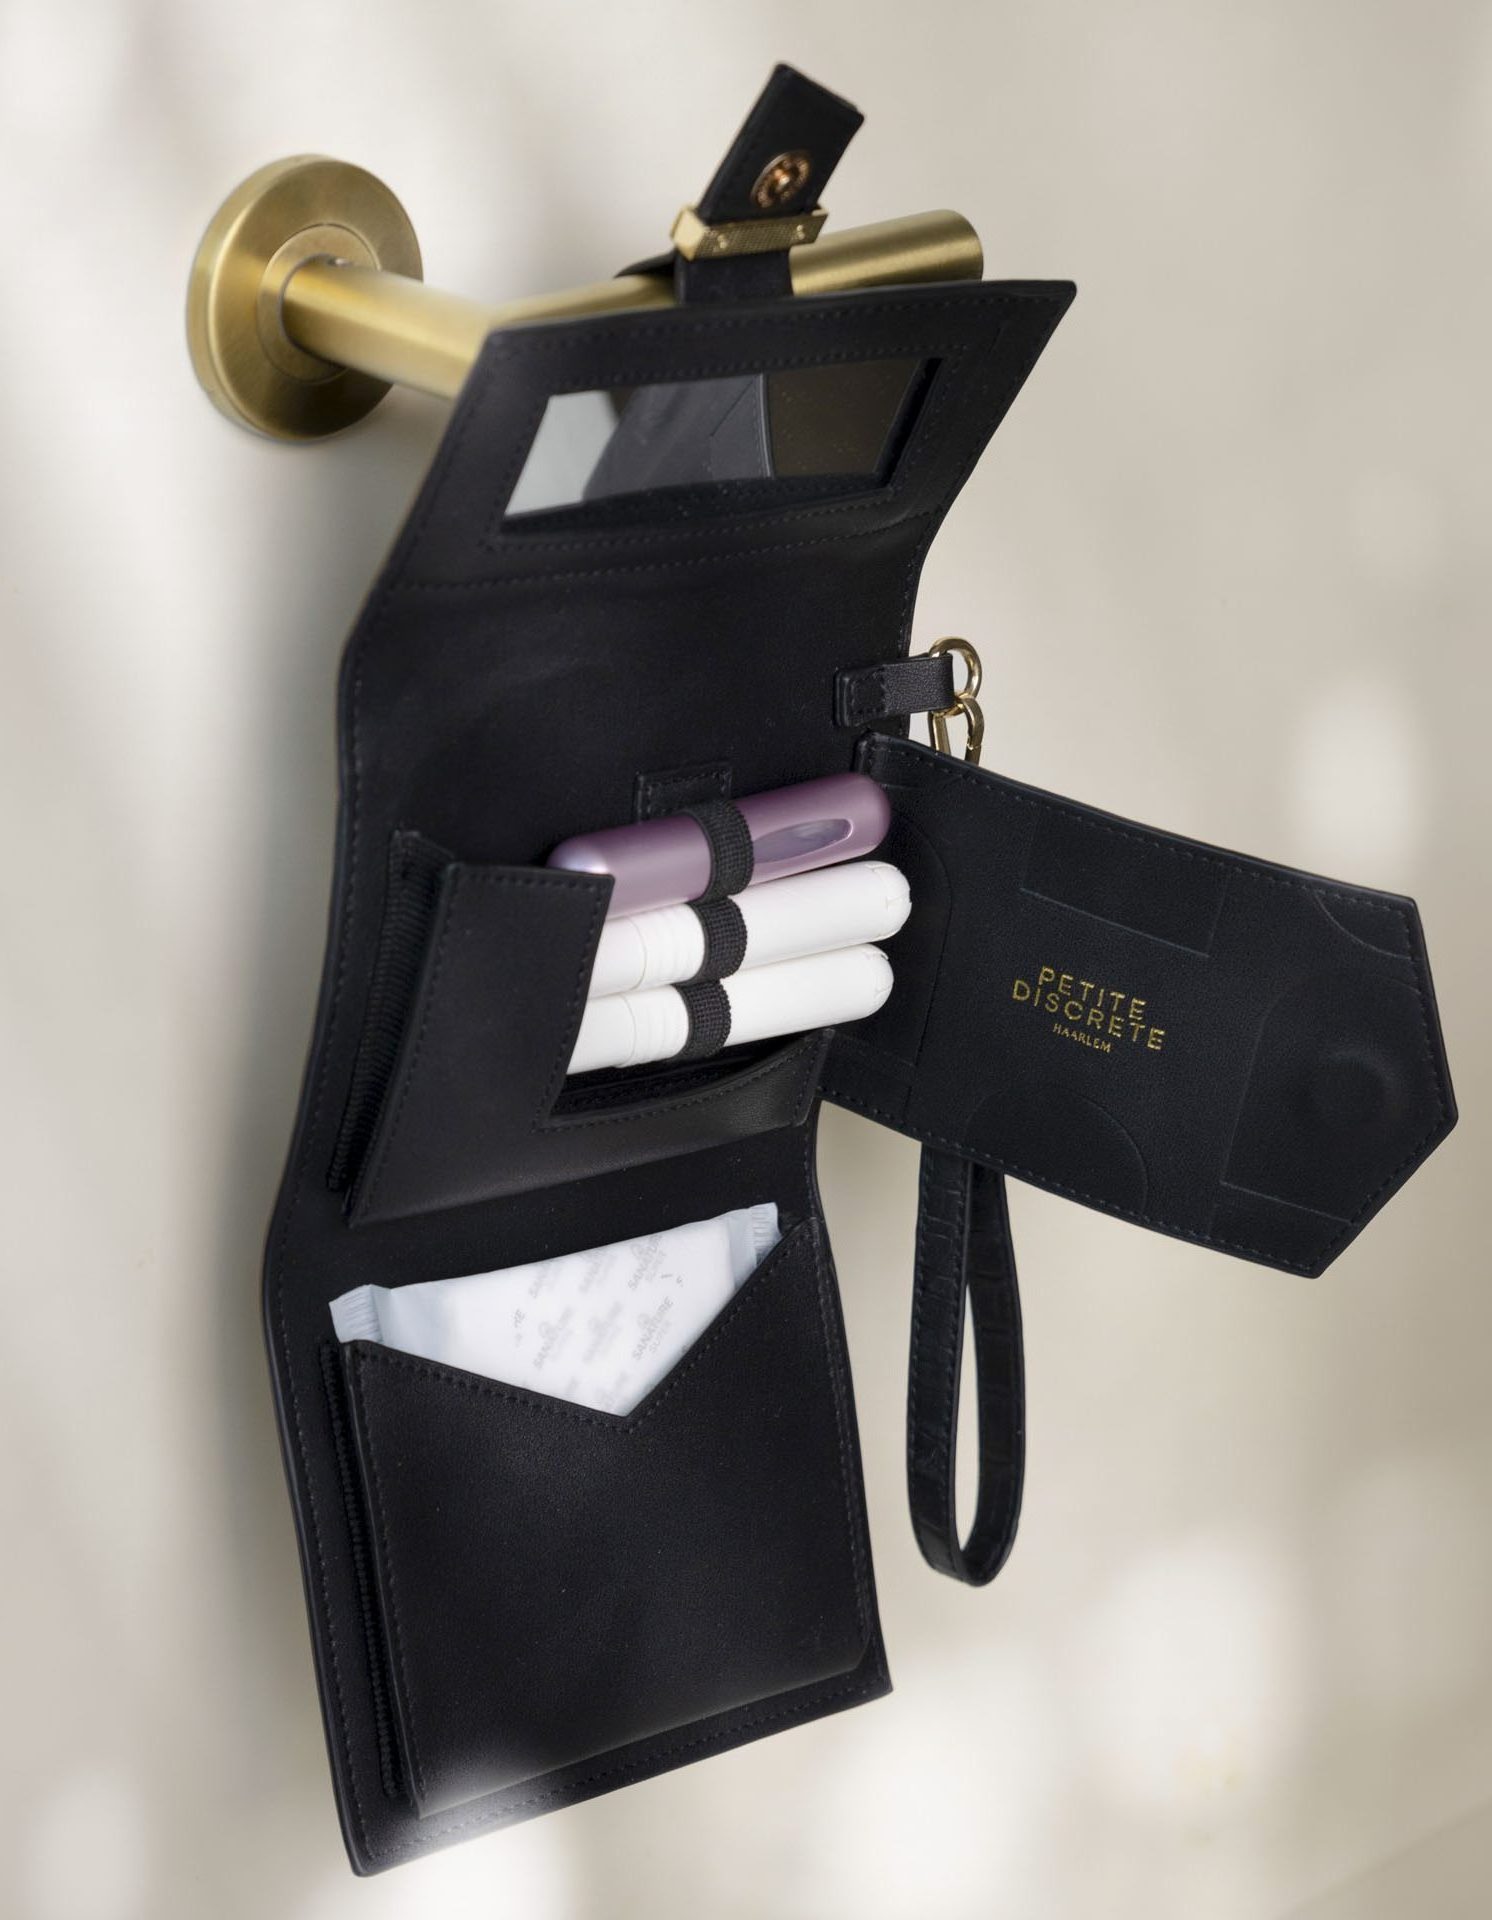 Tampons opbergtasje hangt aan een wc-deurklink. Met behulp van een antislip lus wordt de menstruatie tas om de deurklink geschoven